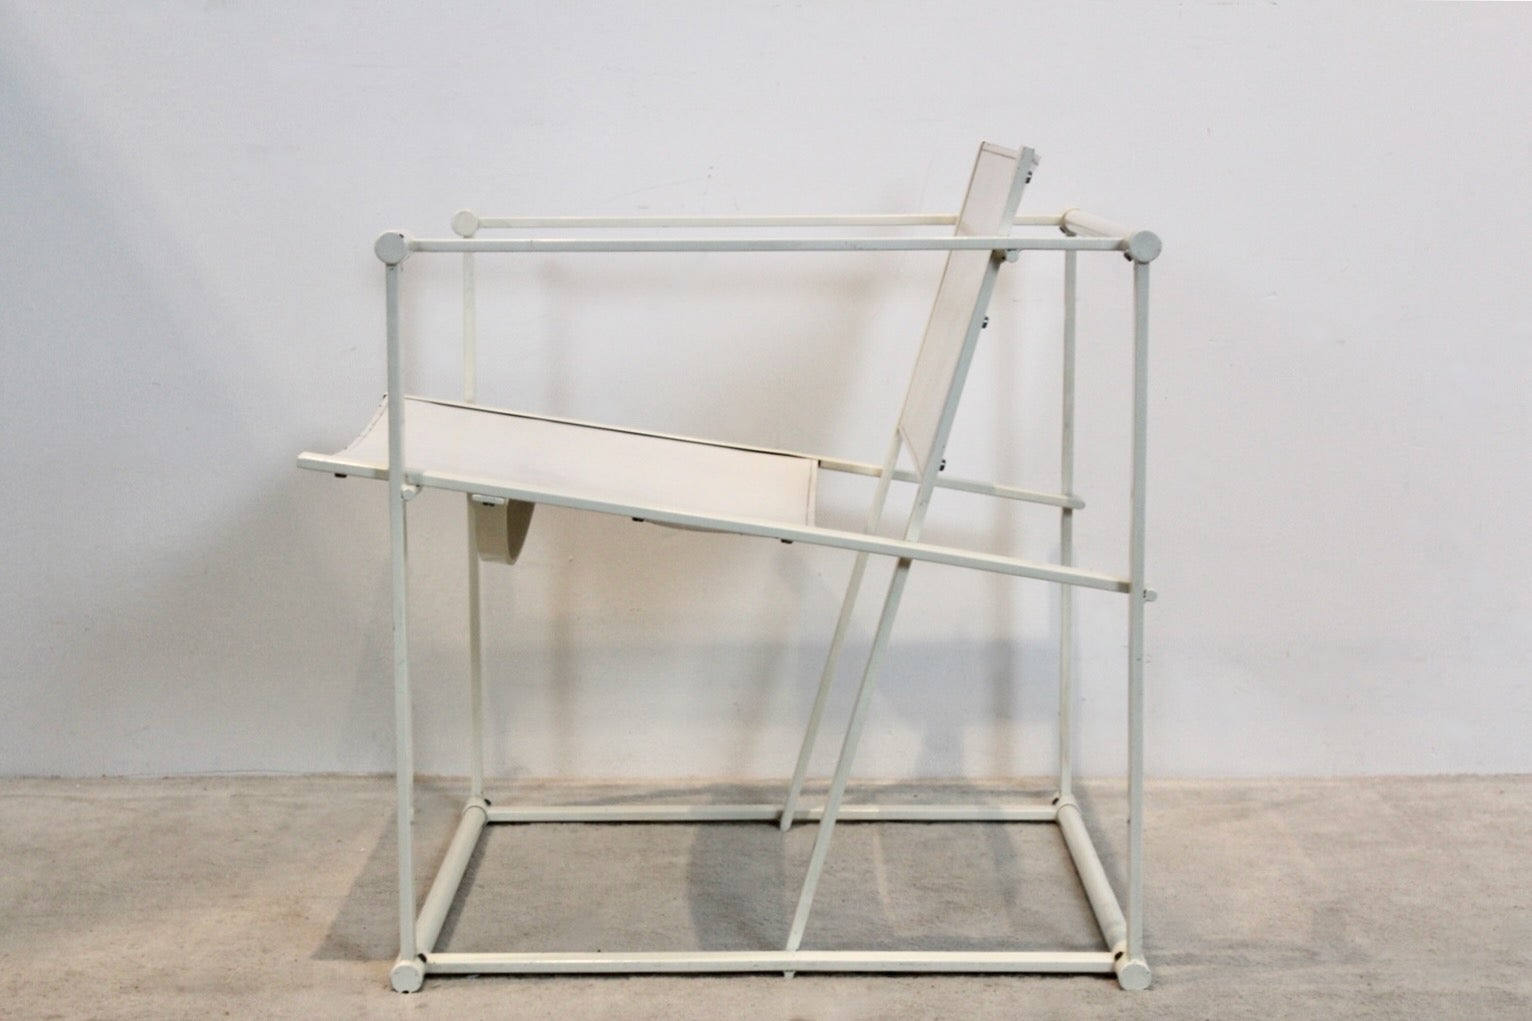 La chaise FM62 Cubic a été conçue par Radboud van Beekum pour Pastoe, aux Pays-Bas, dans les années 1980. Châssis en métal carré laqué, dossier et assise en cuir Saddle blanc robuste et magnifiquement patiné ! Il s'agit d'une pièce unique dotée d'un